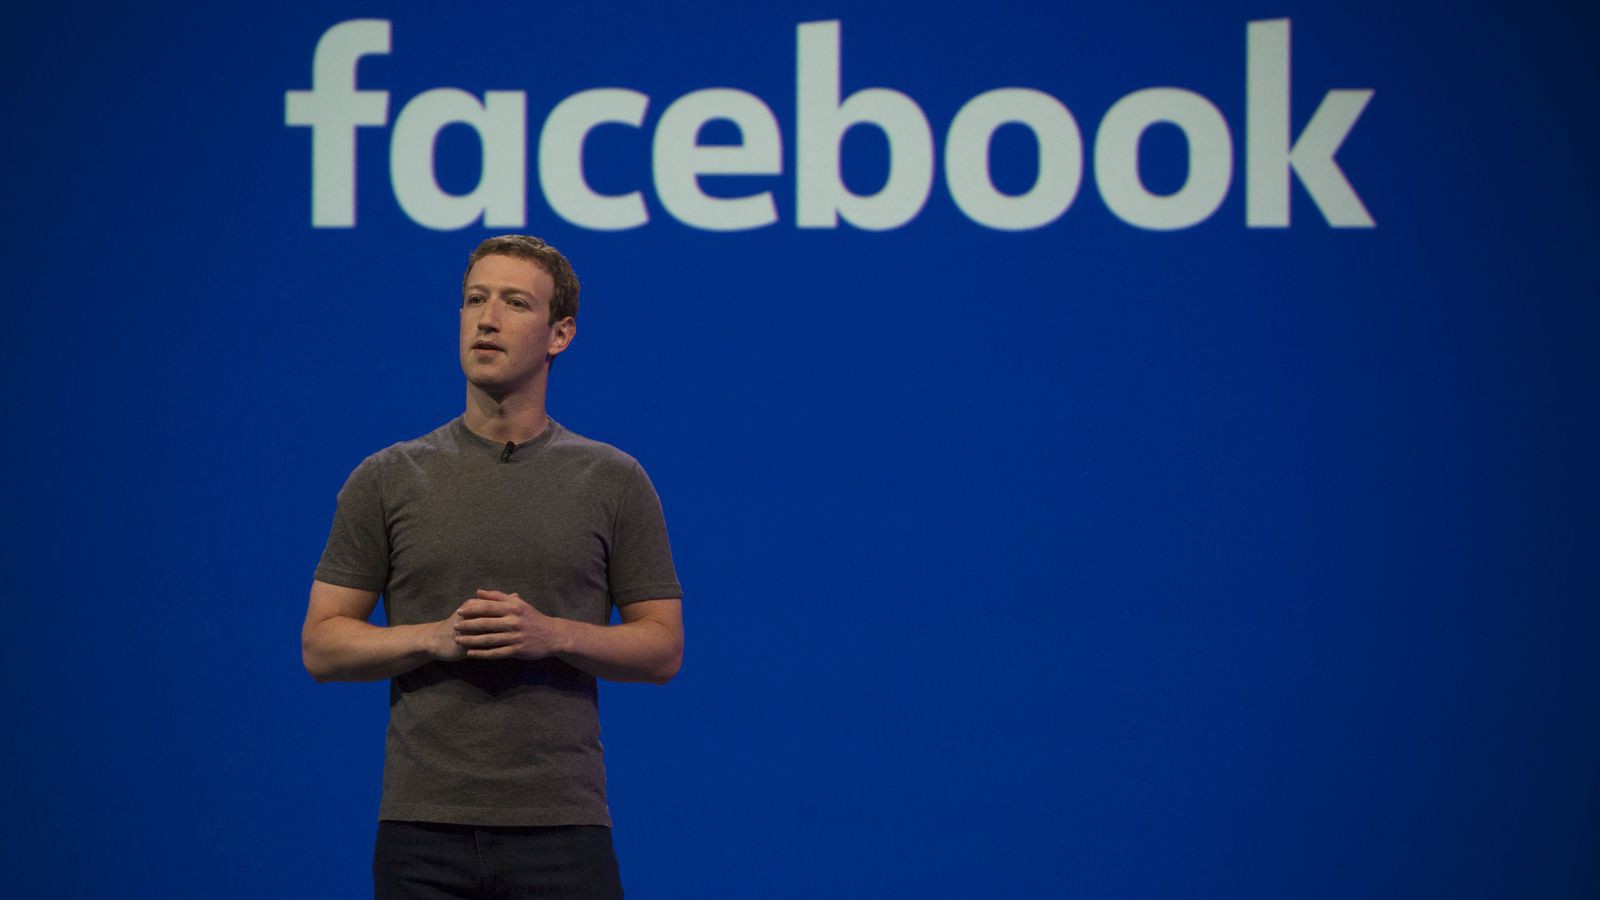 Mark Zuckerberg thành lập TheFacebook.com tại Harvard vào năm 2003. Sau khi bỏ học, Mark dành toàn bộ thời gian để phát triển mạng xã hội này. Hiện Facebook là mạng xã hội lớn nhất thế giới với hơn 2 tỷ người dùng. Ở tuổi 33, Zuckerberg sở hữu khối tài sản 72,3 tỷ USD.